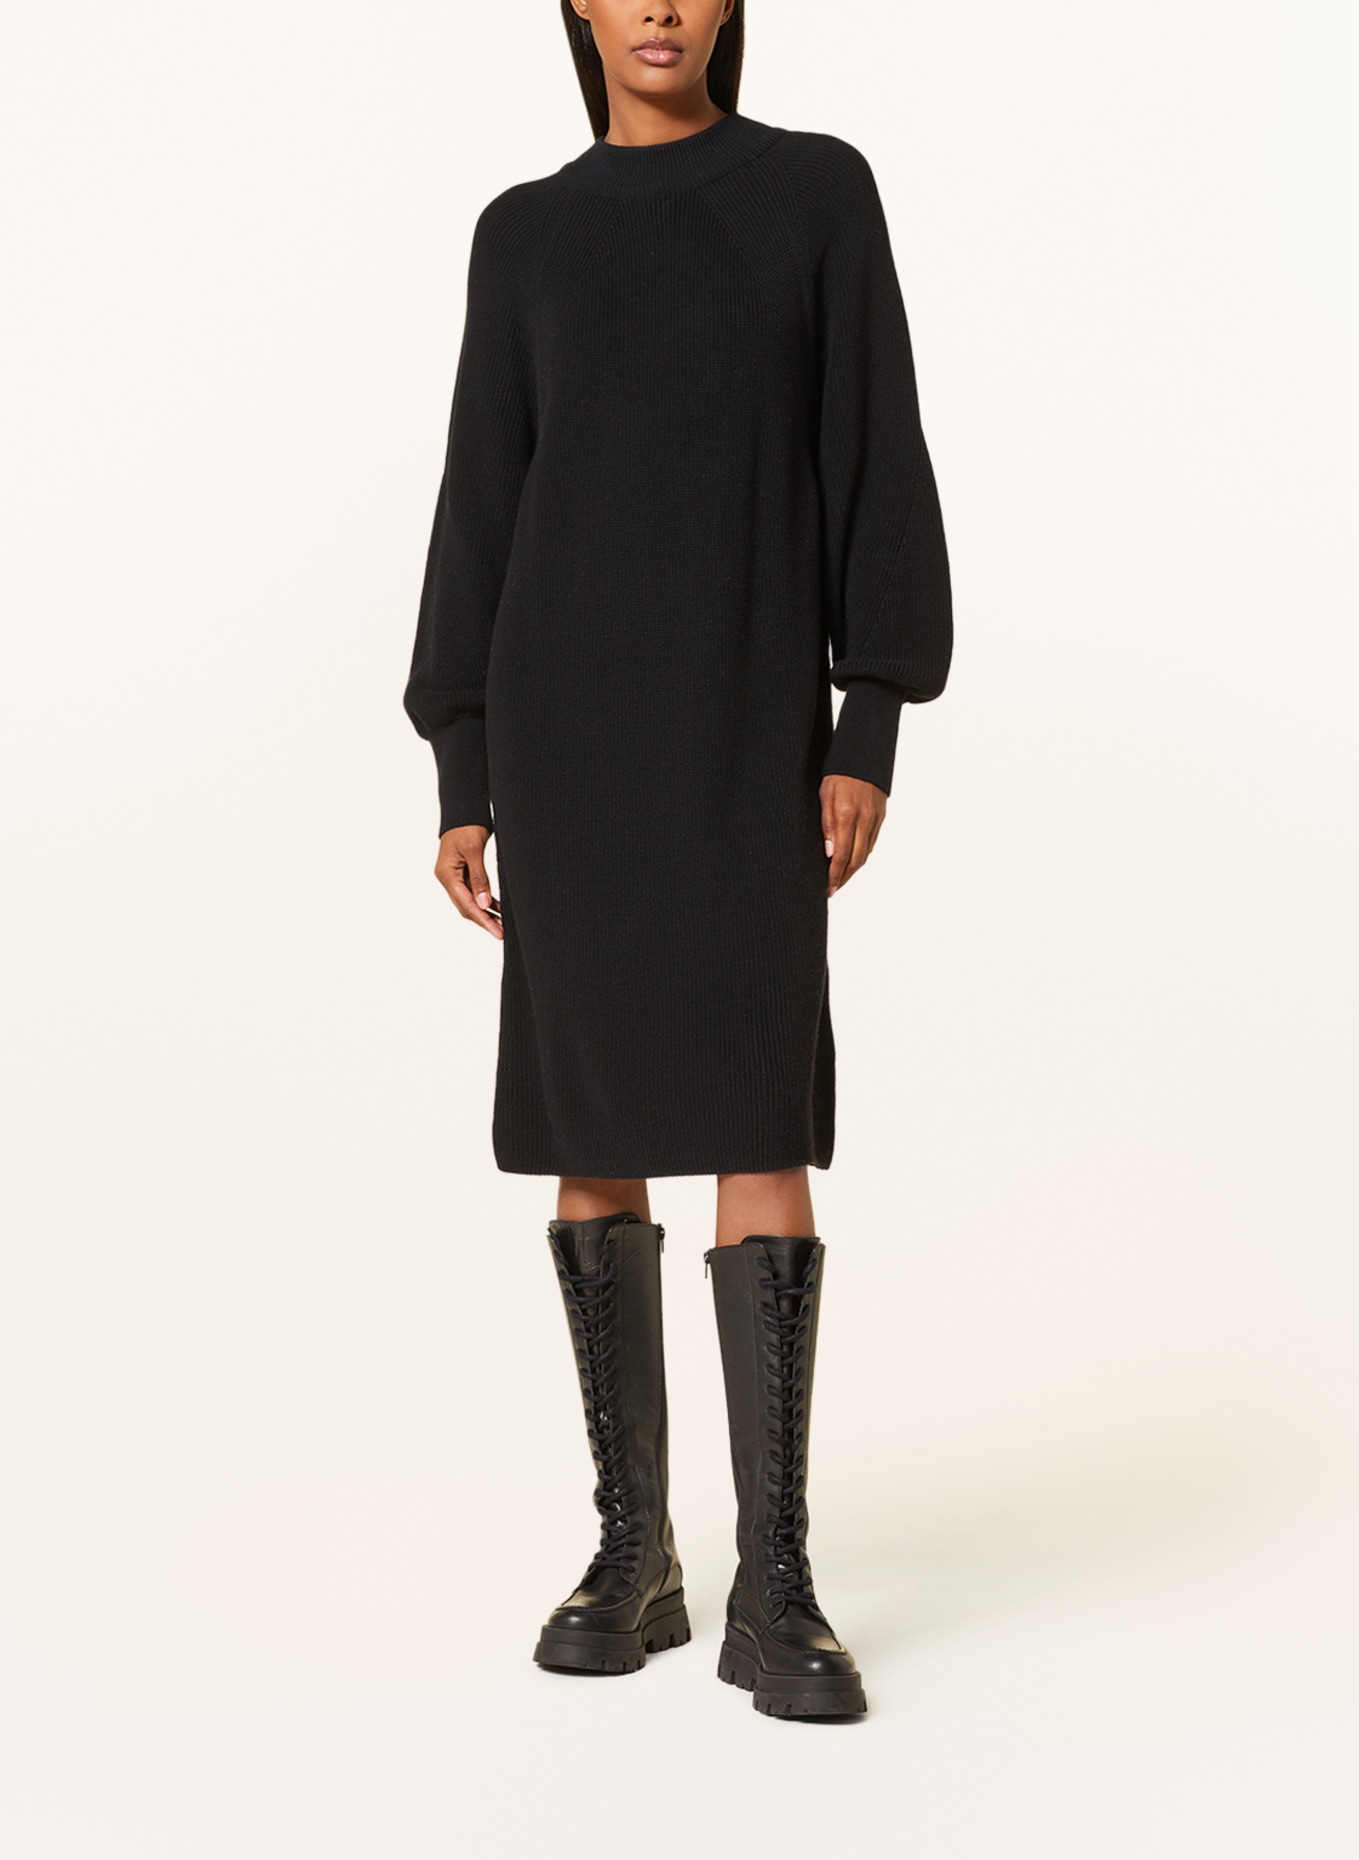 BARBOUR INTERNATIONAL Knit dress BOULEVARD, Color: BLACK (Image 2)